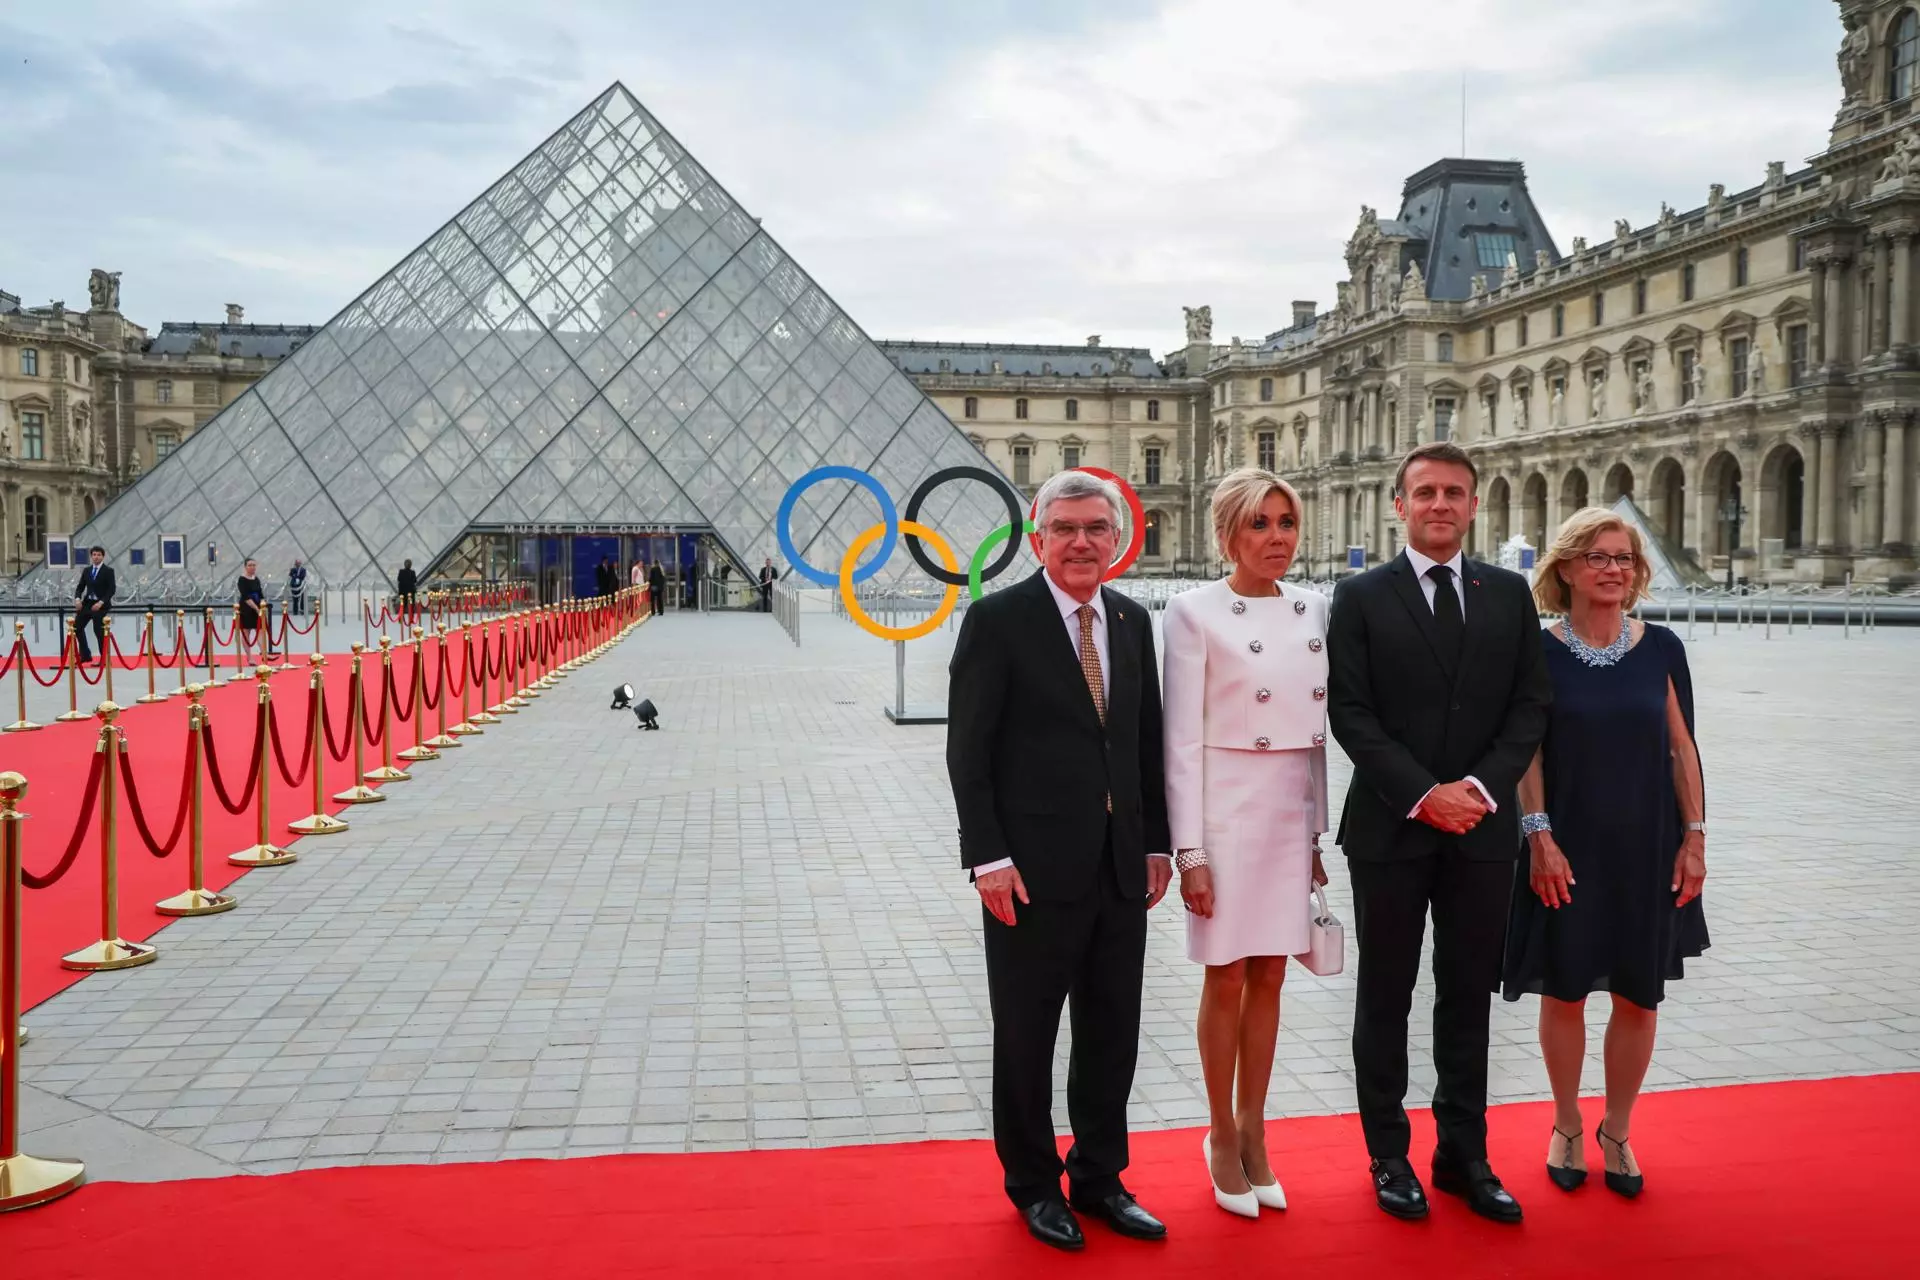 El presidente del Comité Olímpico Internacional (COI), Thomas Bach (i), y su esposa Claudia Bach (d), posan con el presidente francés, Emmanuel Macron, y su esposa, Brigitte Macron, a su llegada a la pirámide del Louvre. — EPA/LUDOVIC MARIN / Efe